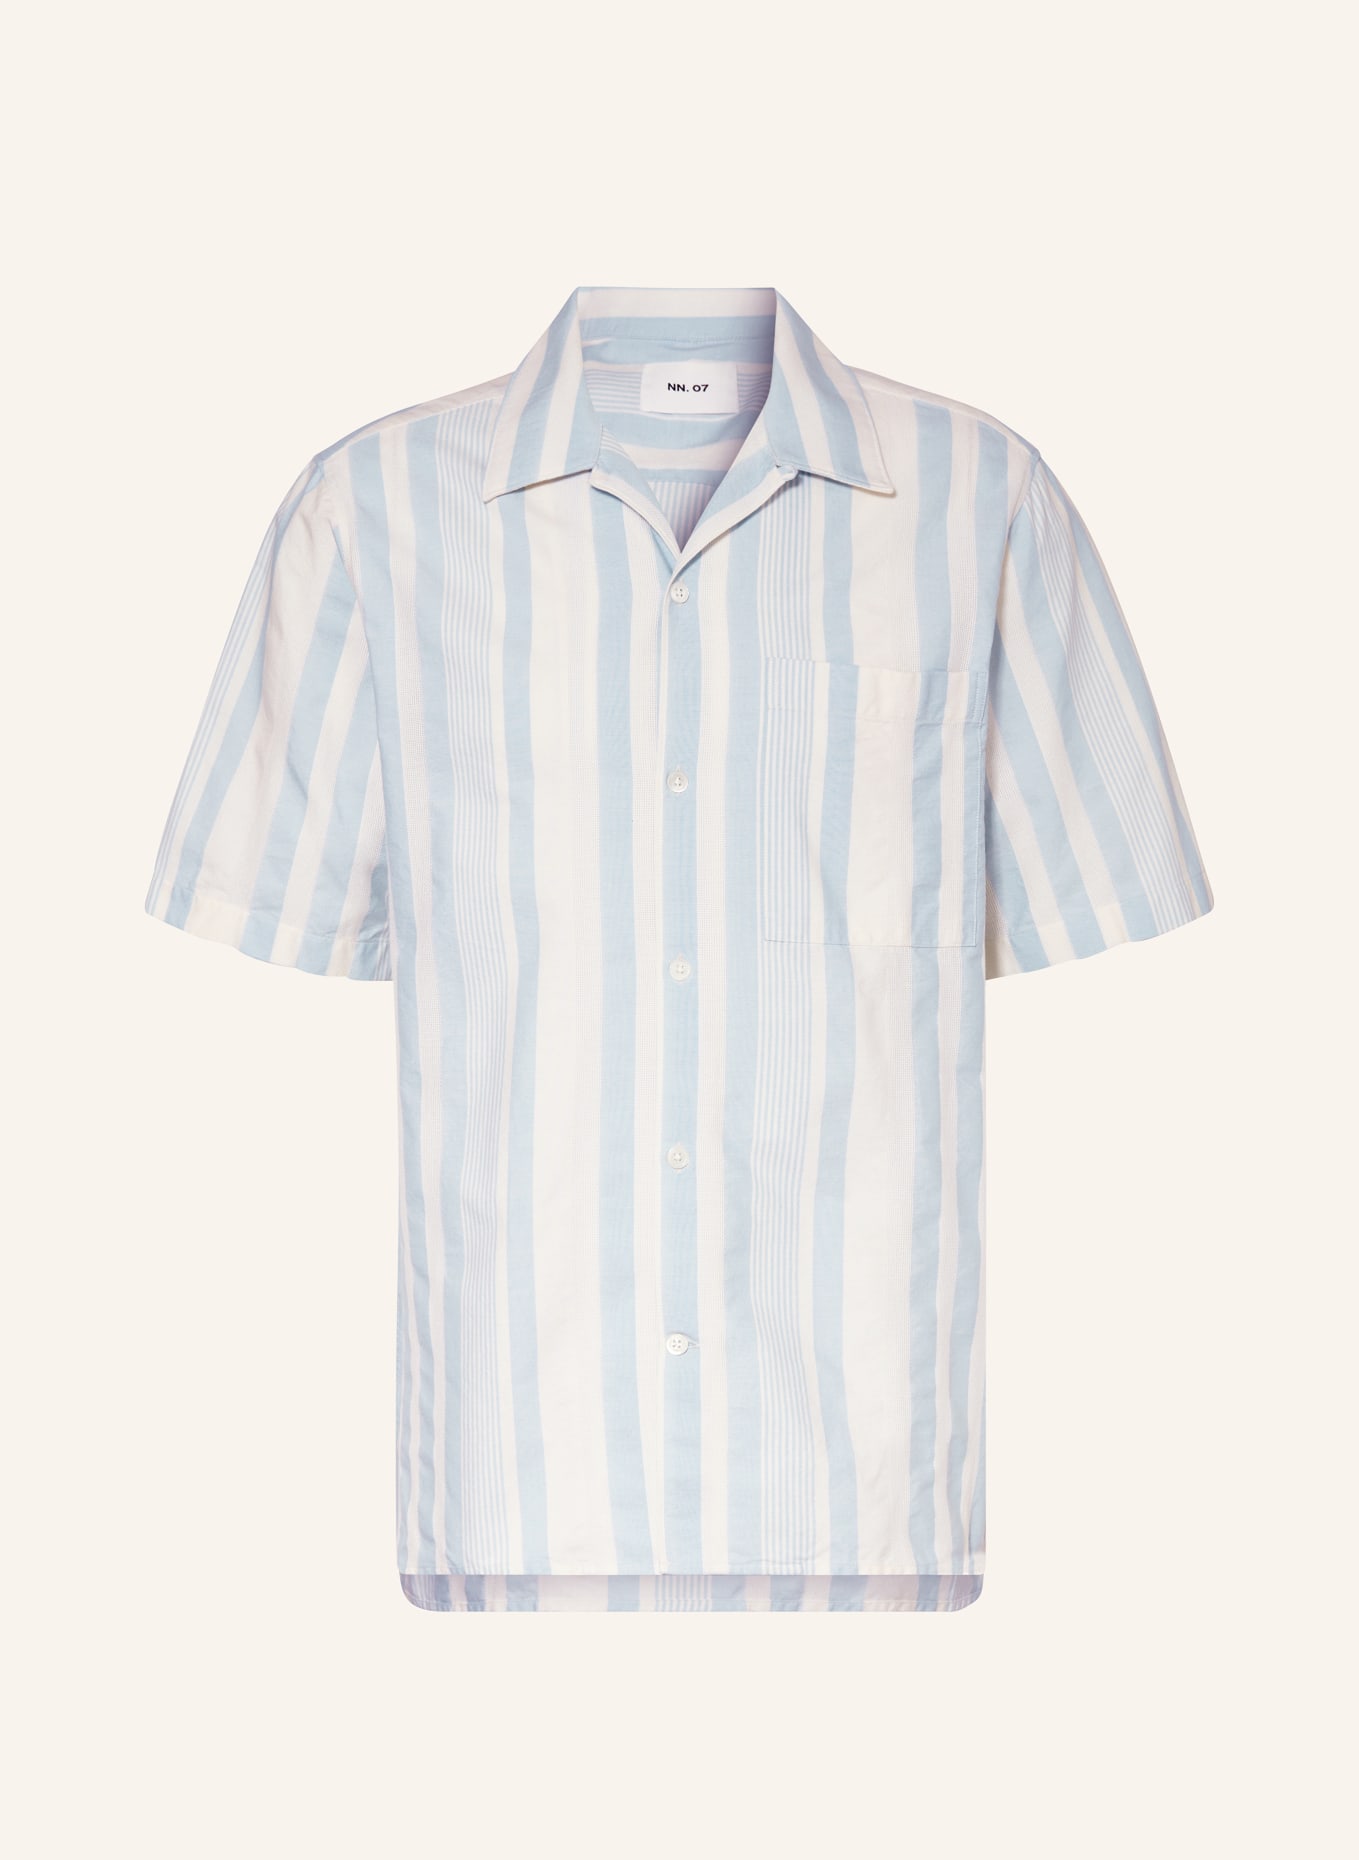 NN.07 Resort shirt JULIO comfort fit, Color: LIGHT BLUE/ ECRU (Image 1)